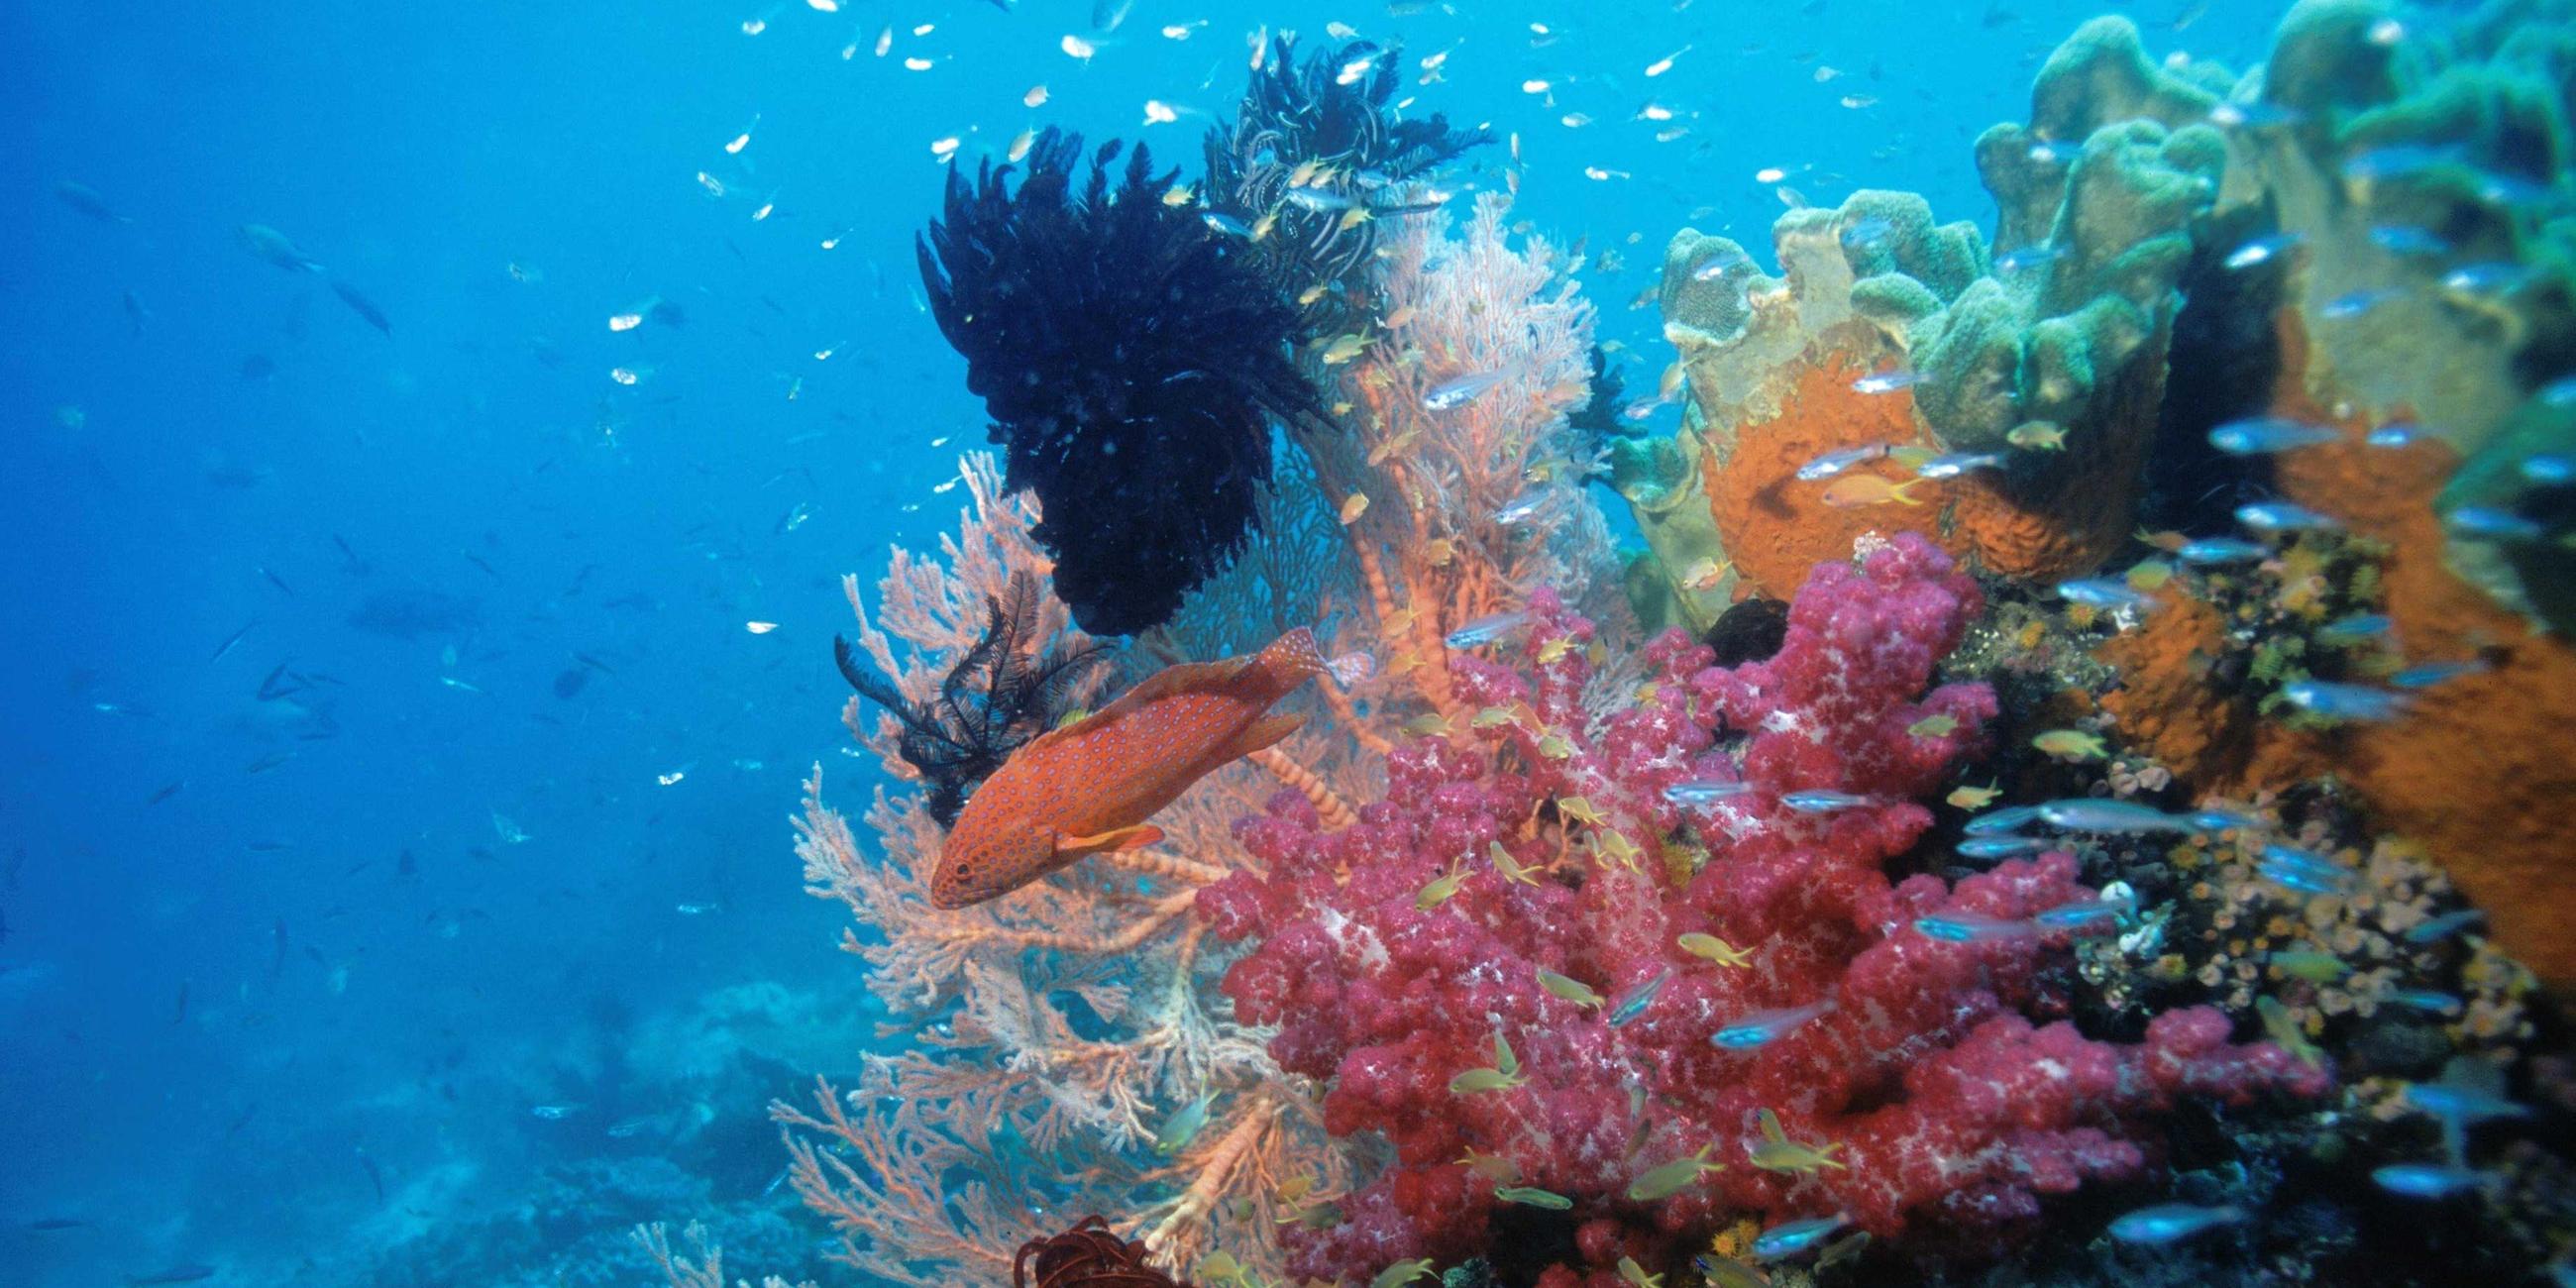  Korallen und ein rötlicher, hell gepunkteter Fisch.